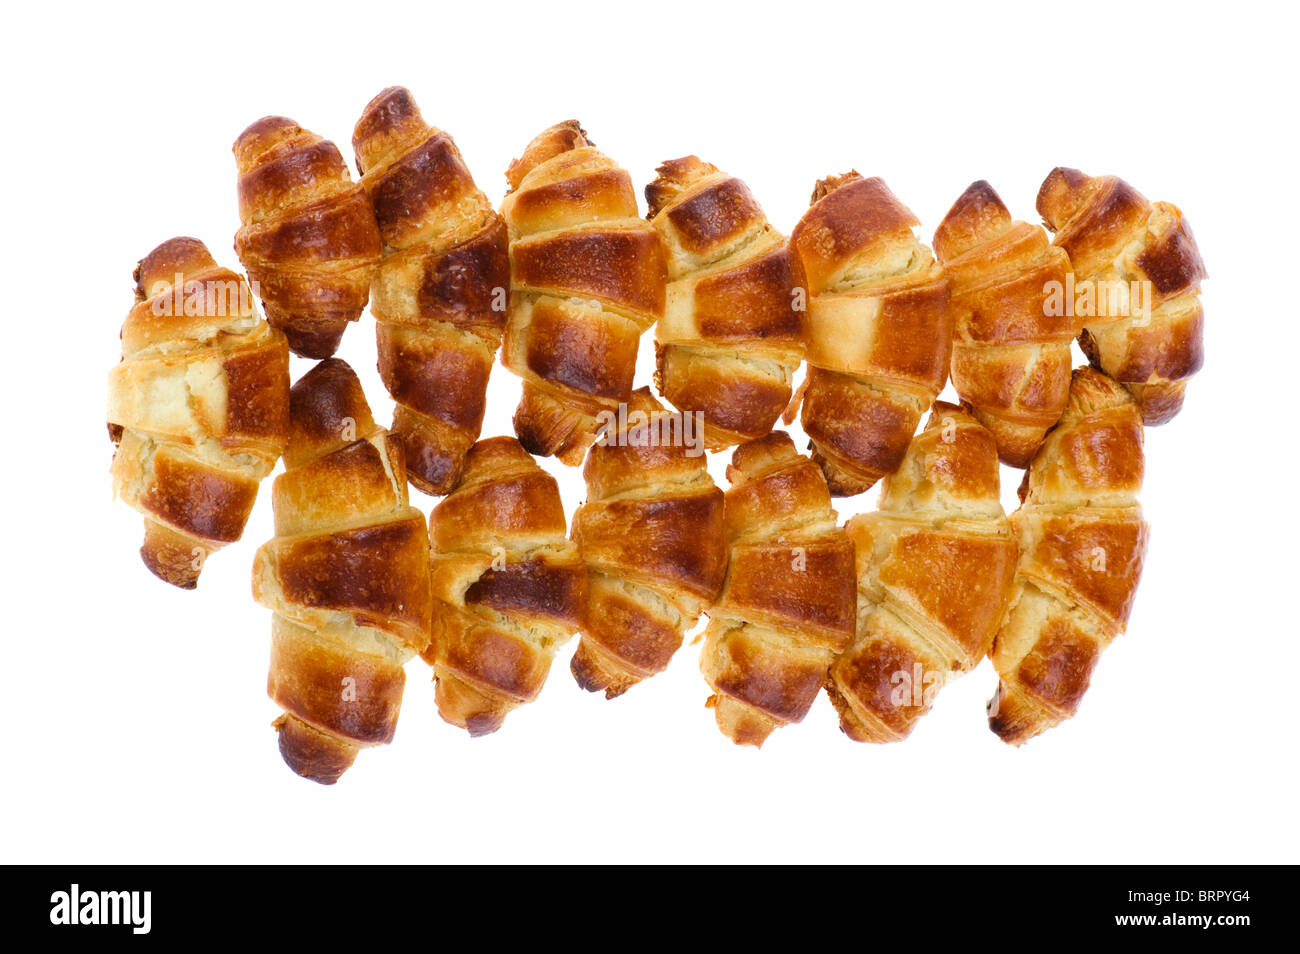 Objekt auf weiß - Croissant Essen Nahaufnahme Stockfoto